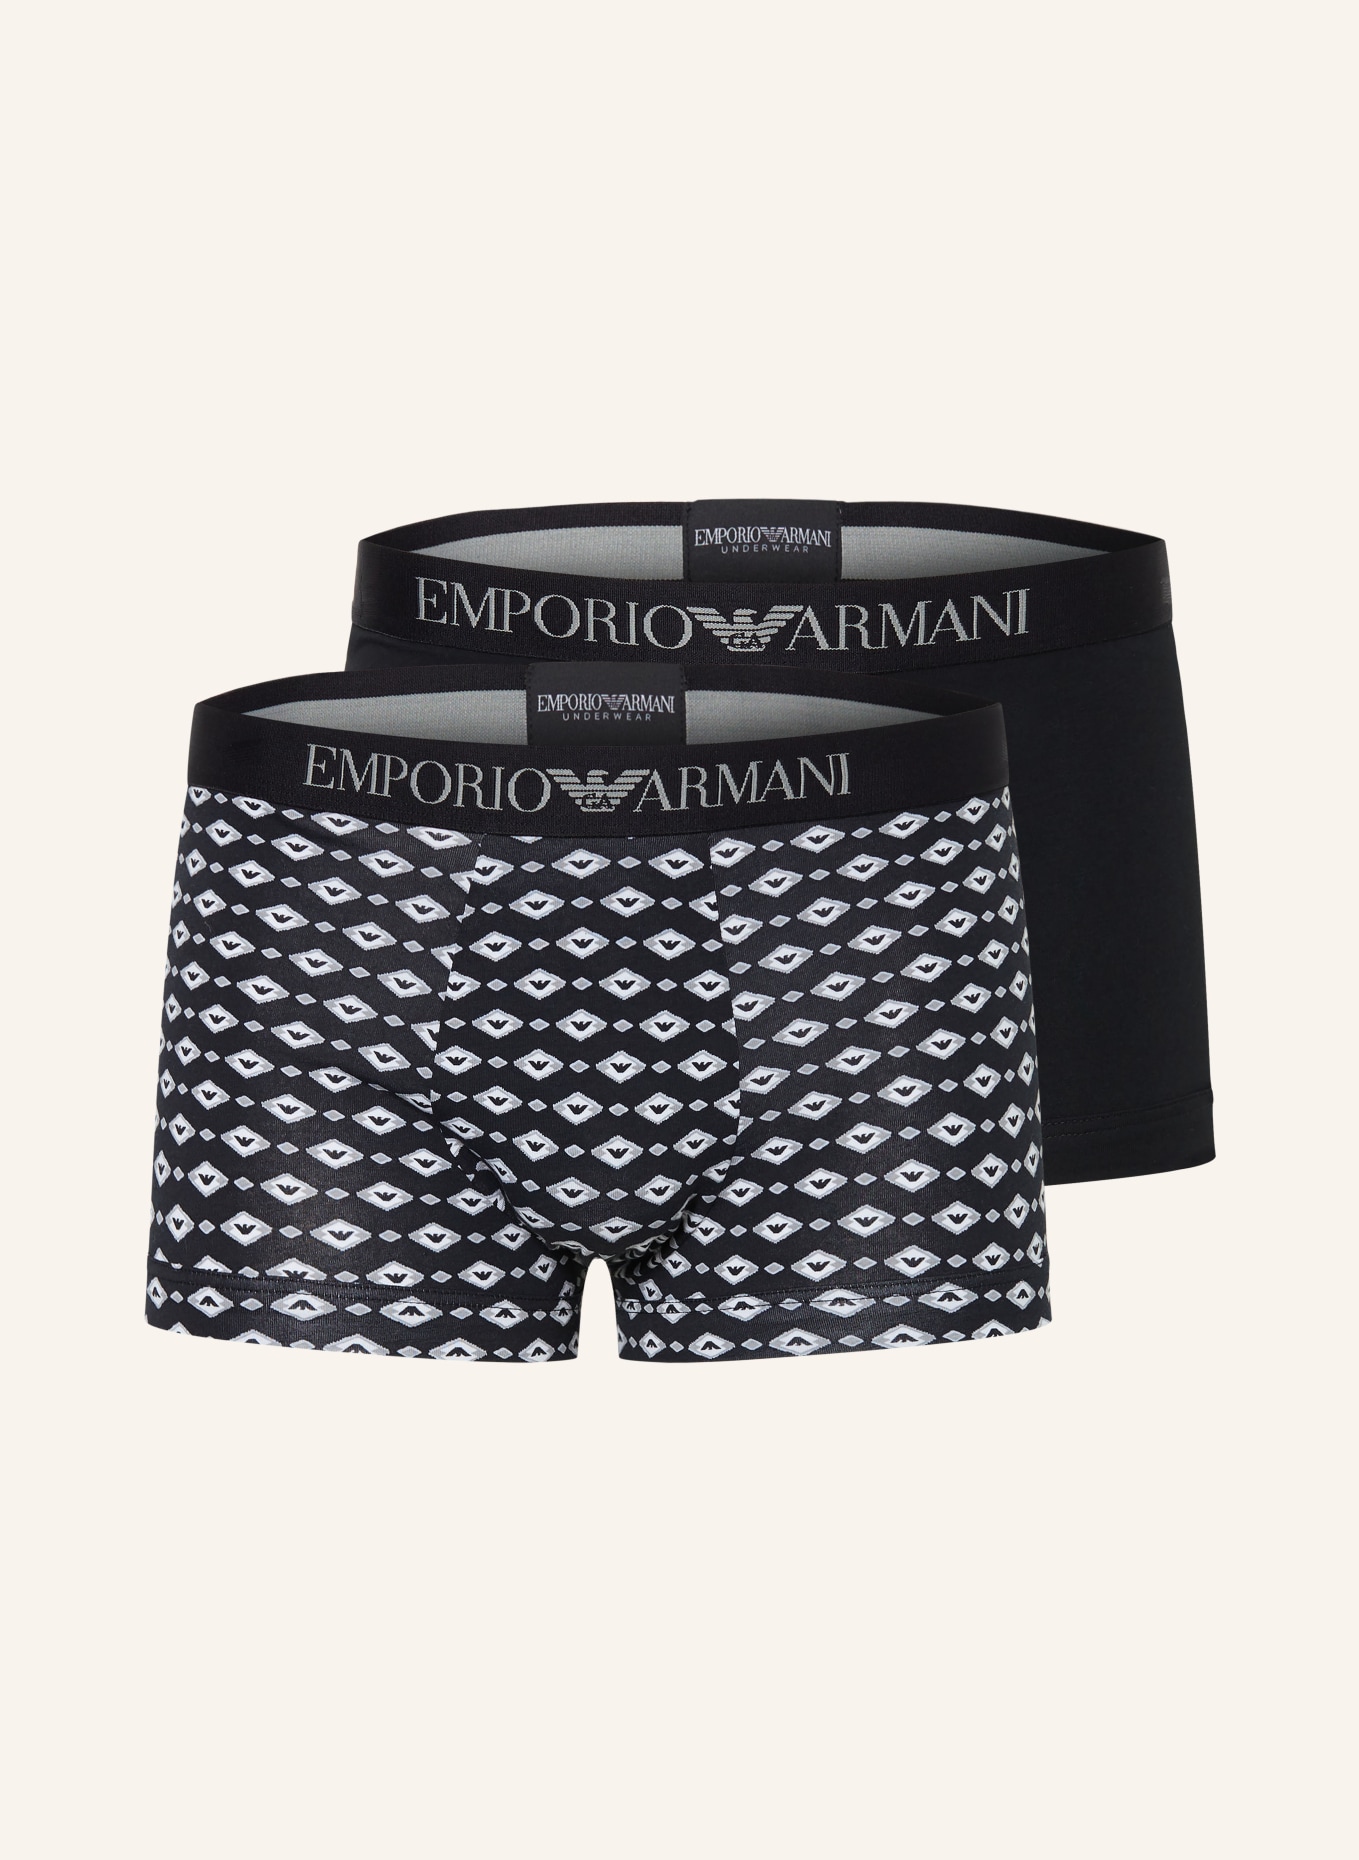 EMPORIO ARMANI 2-pack boxer shorts, Color: BLACK/ GRAY/ WHITE (Image 1)